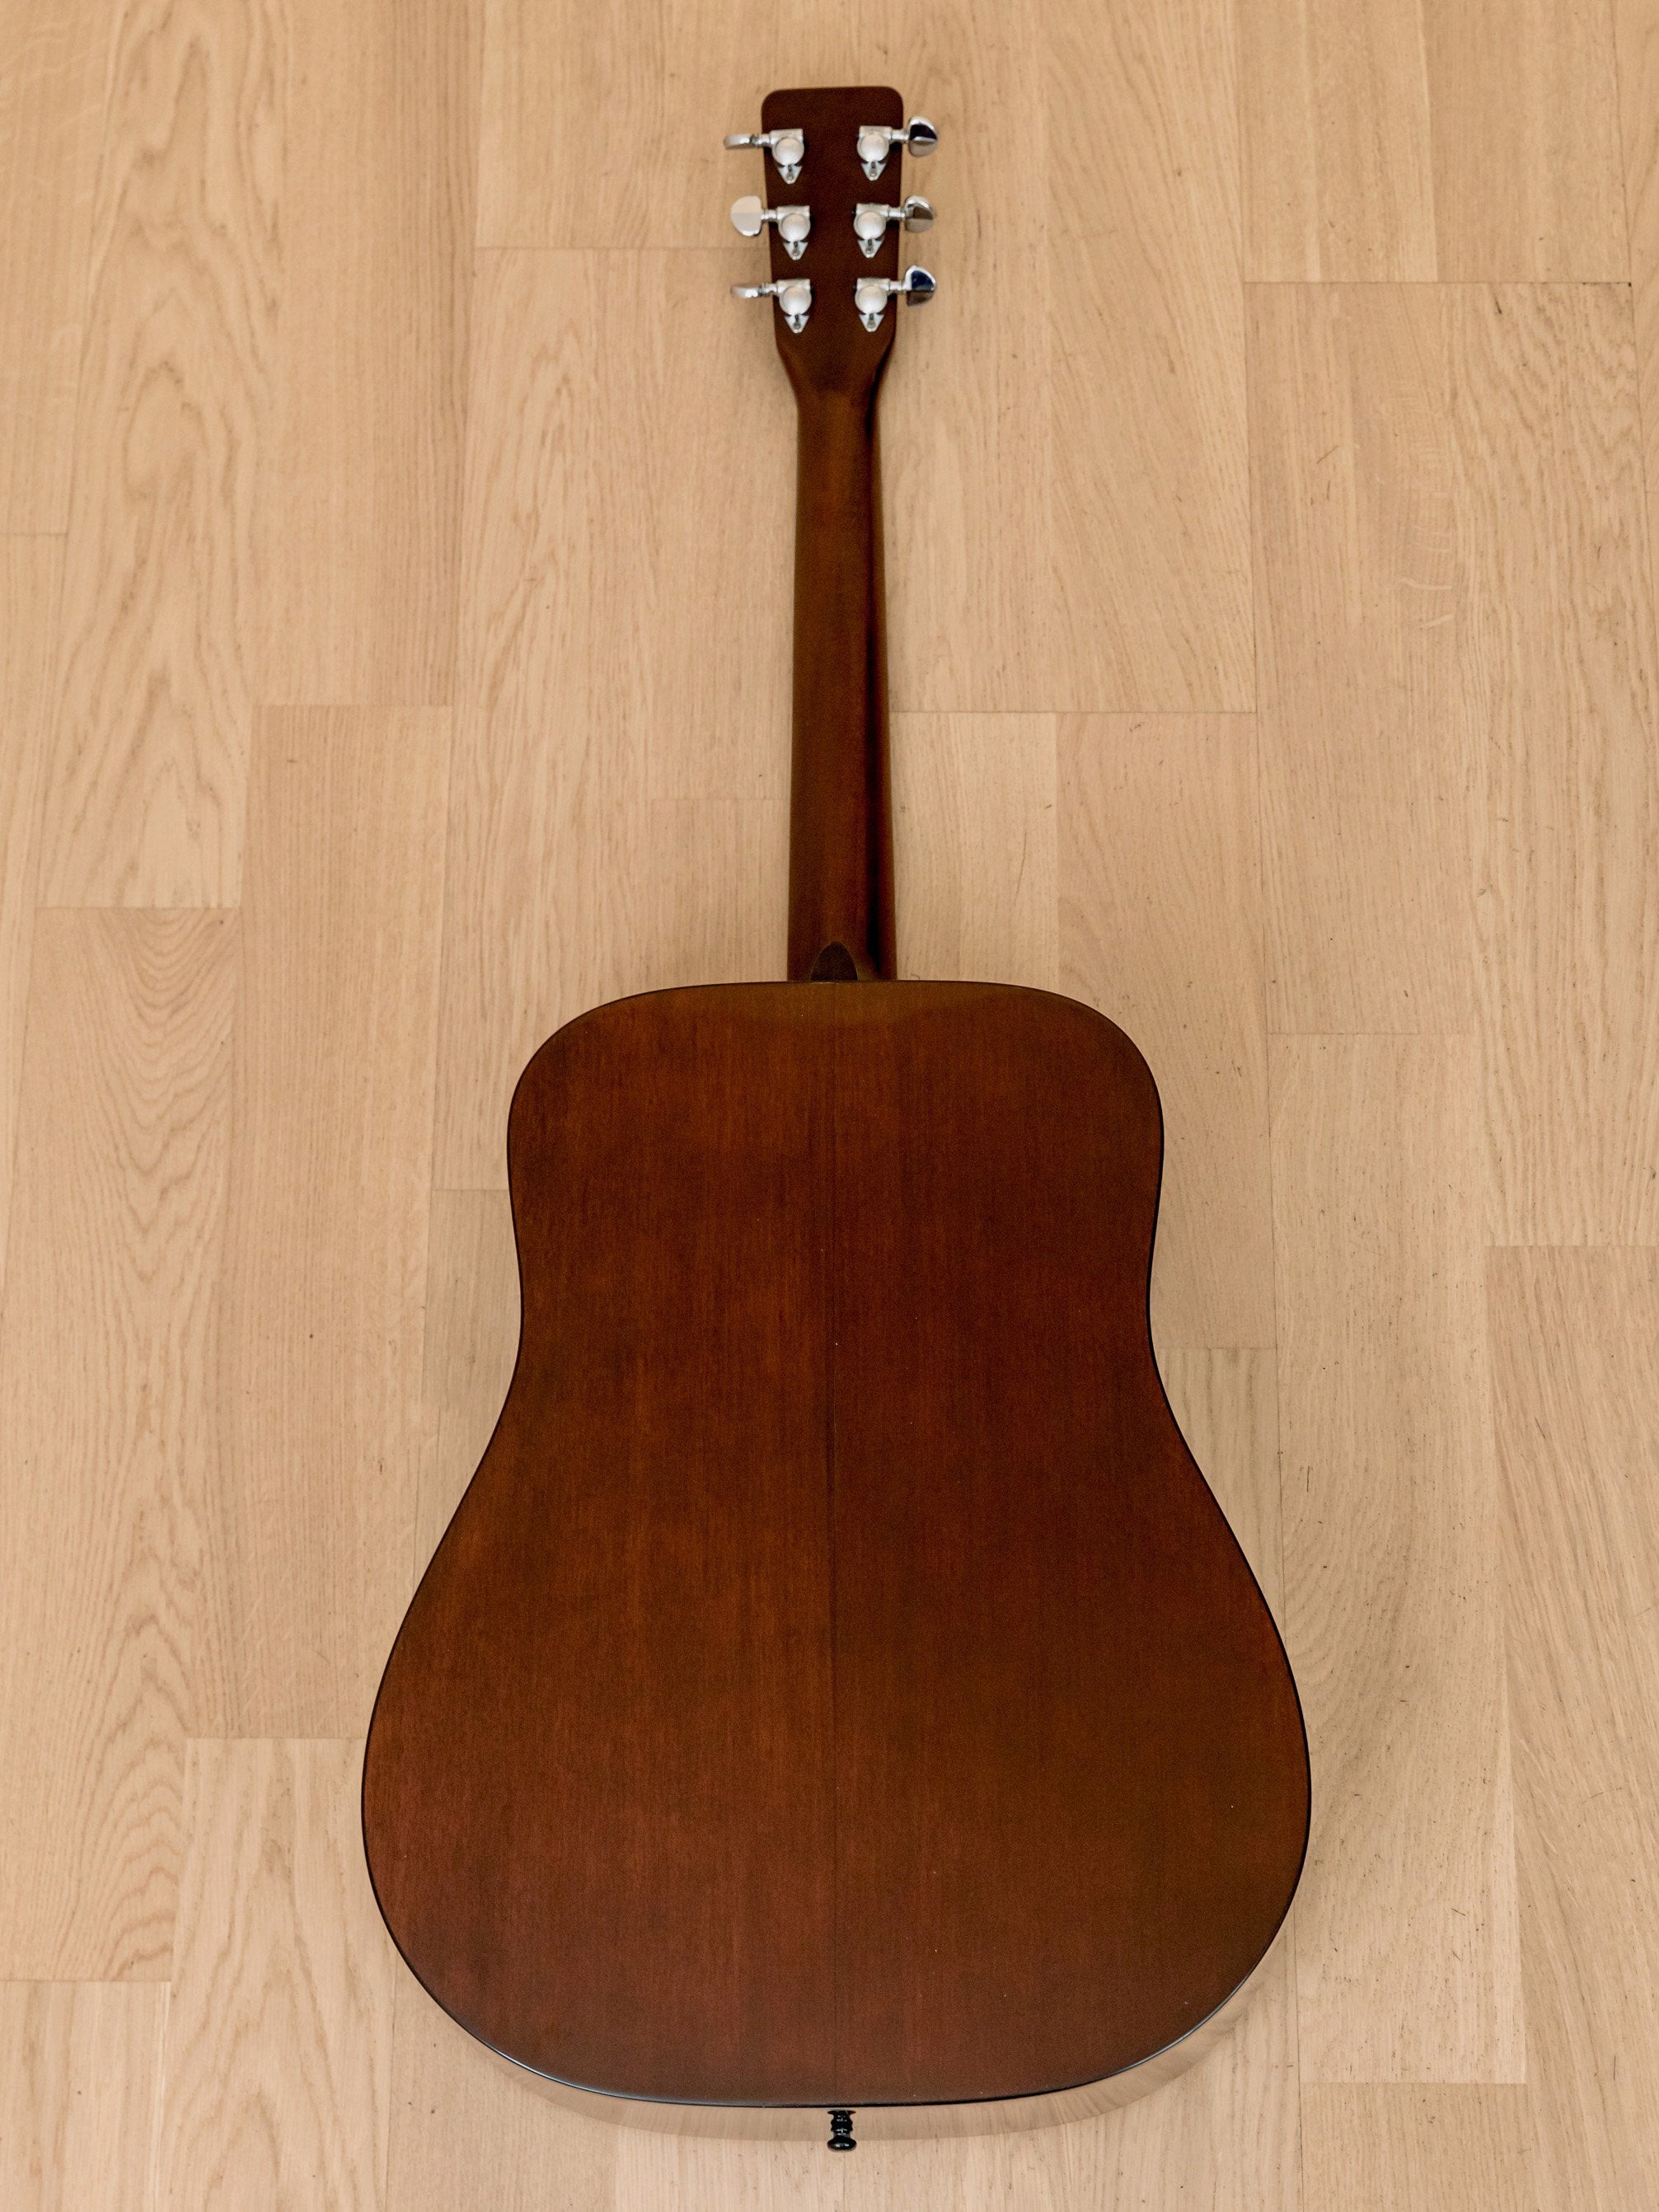 1968 Martin D-18 Dreadnought Vintage Acoustic Guitar, Near-Mint w/ Case